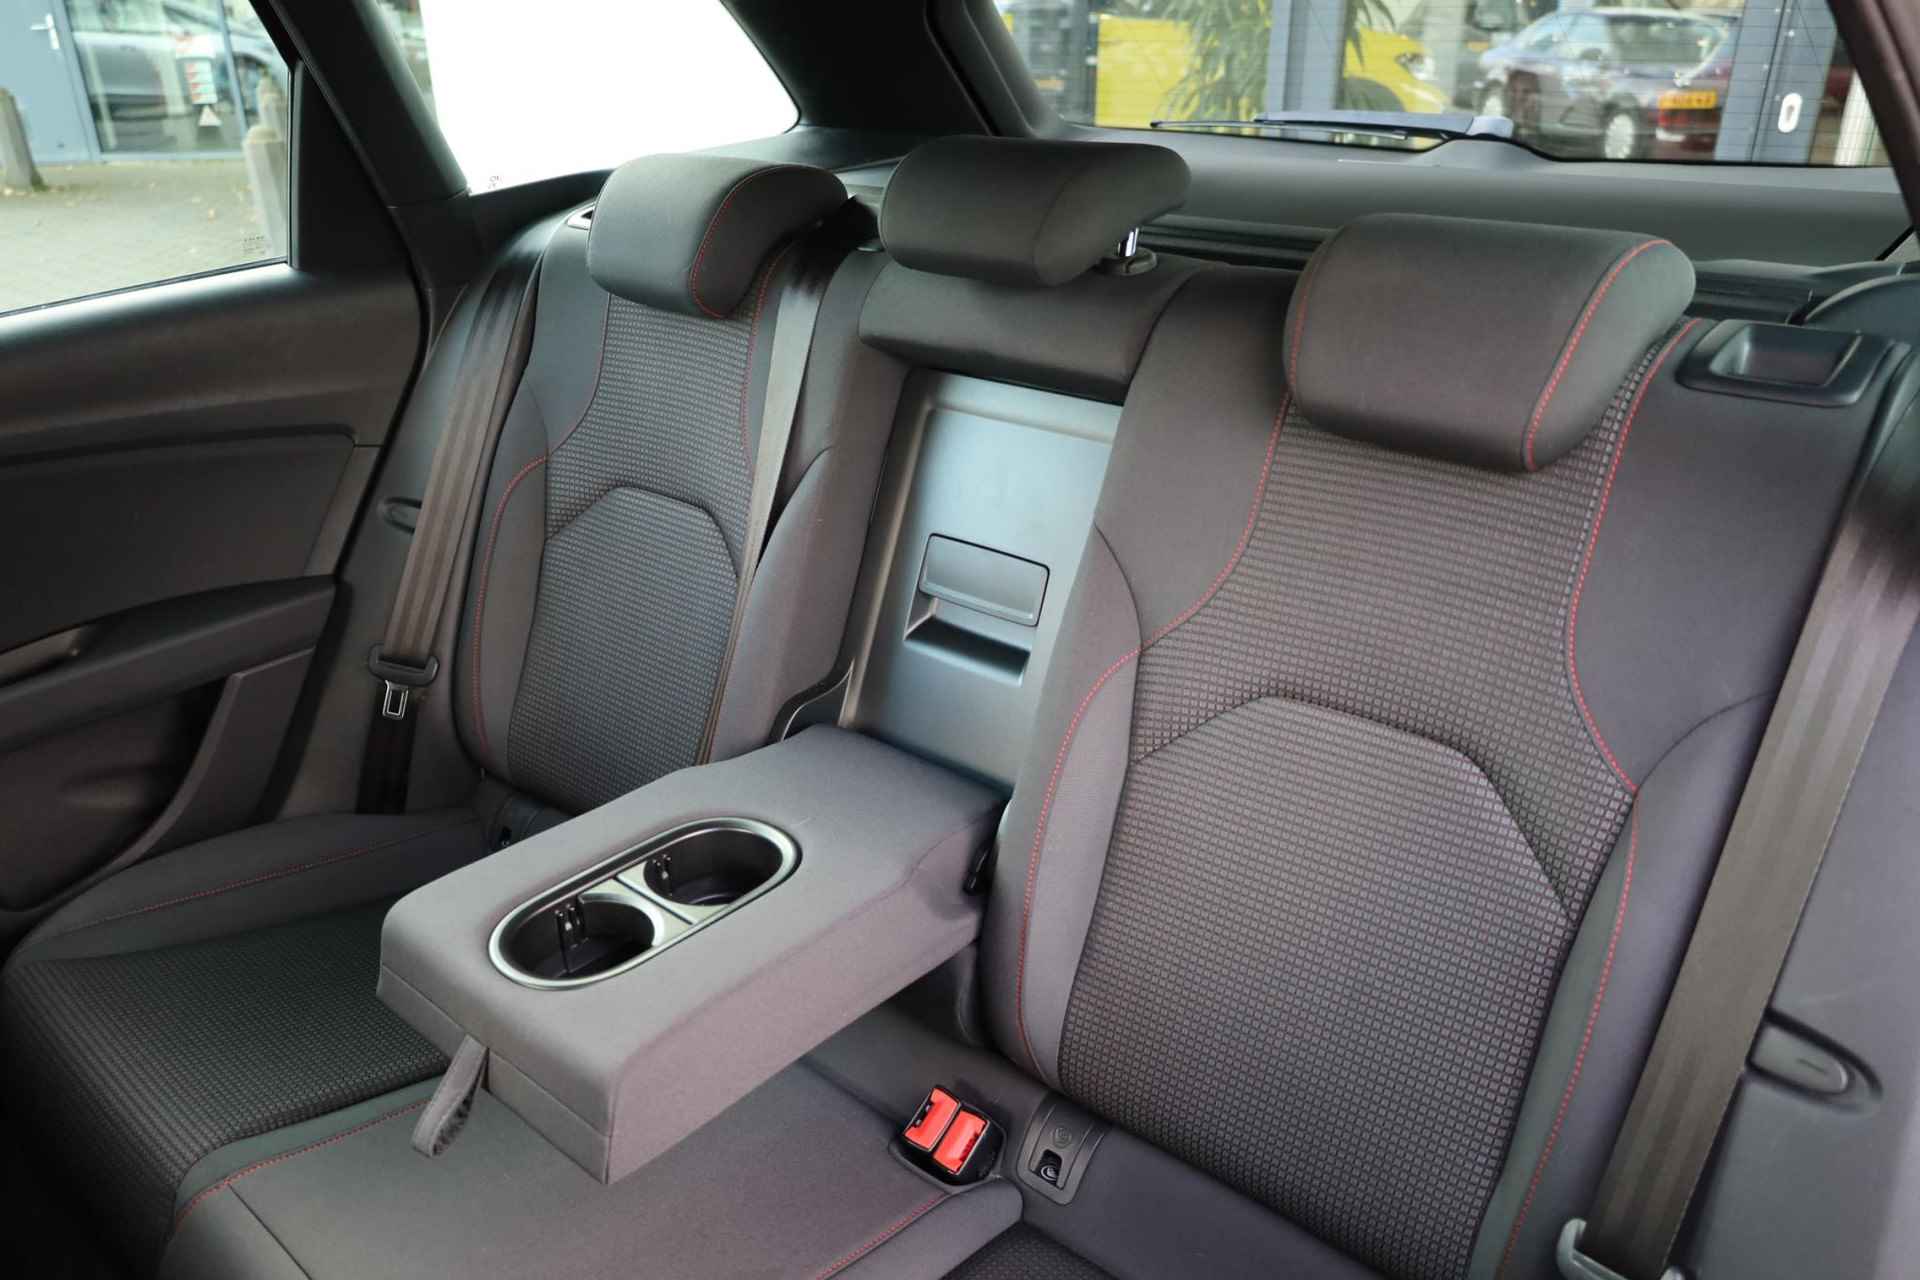 SEAT Leon ST 1.0 TSI FR Business Intense 115PK / 85kW, 17" LMV, achteruitrijcamera, stoelverwarming, navigatie, pdc voor en achter, NL auto door ons geleverd en onderhouden - 43/46